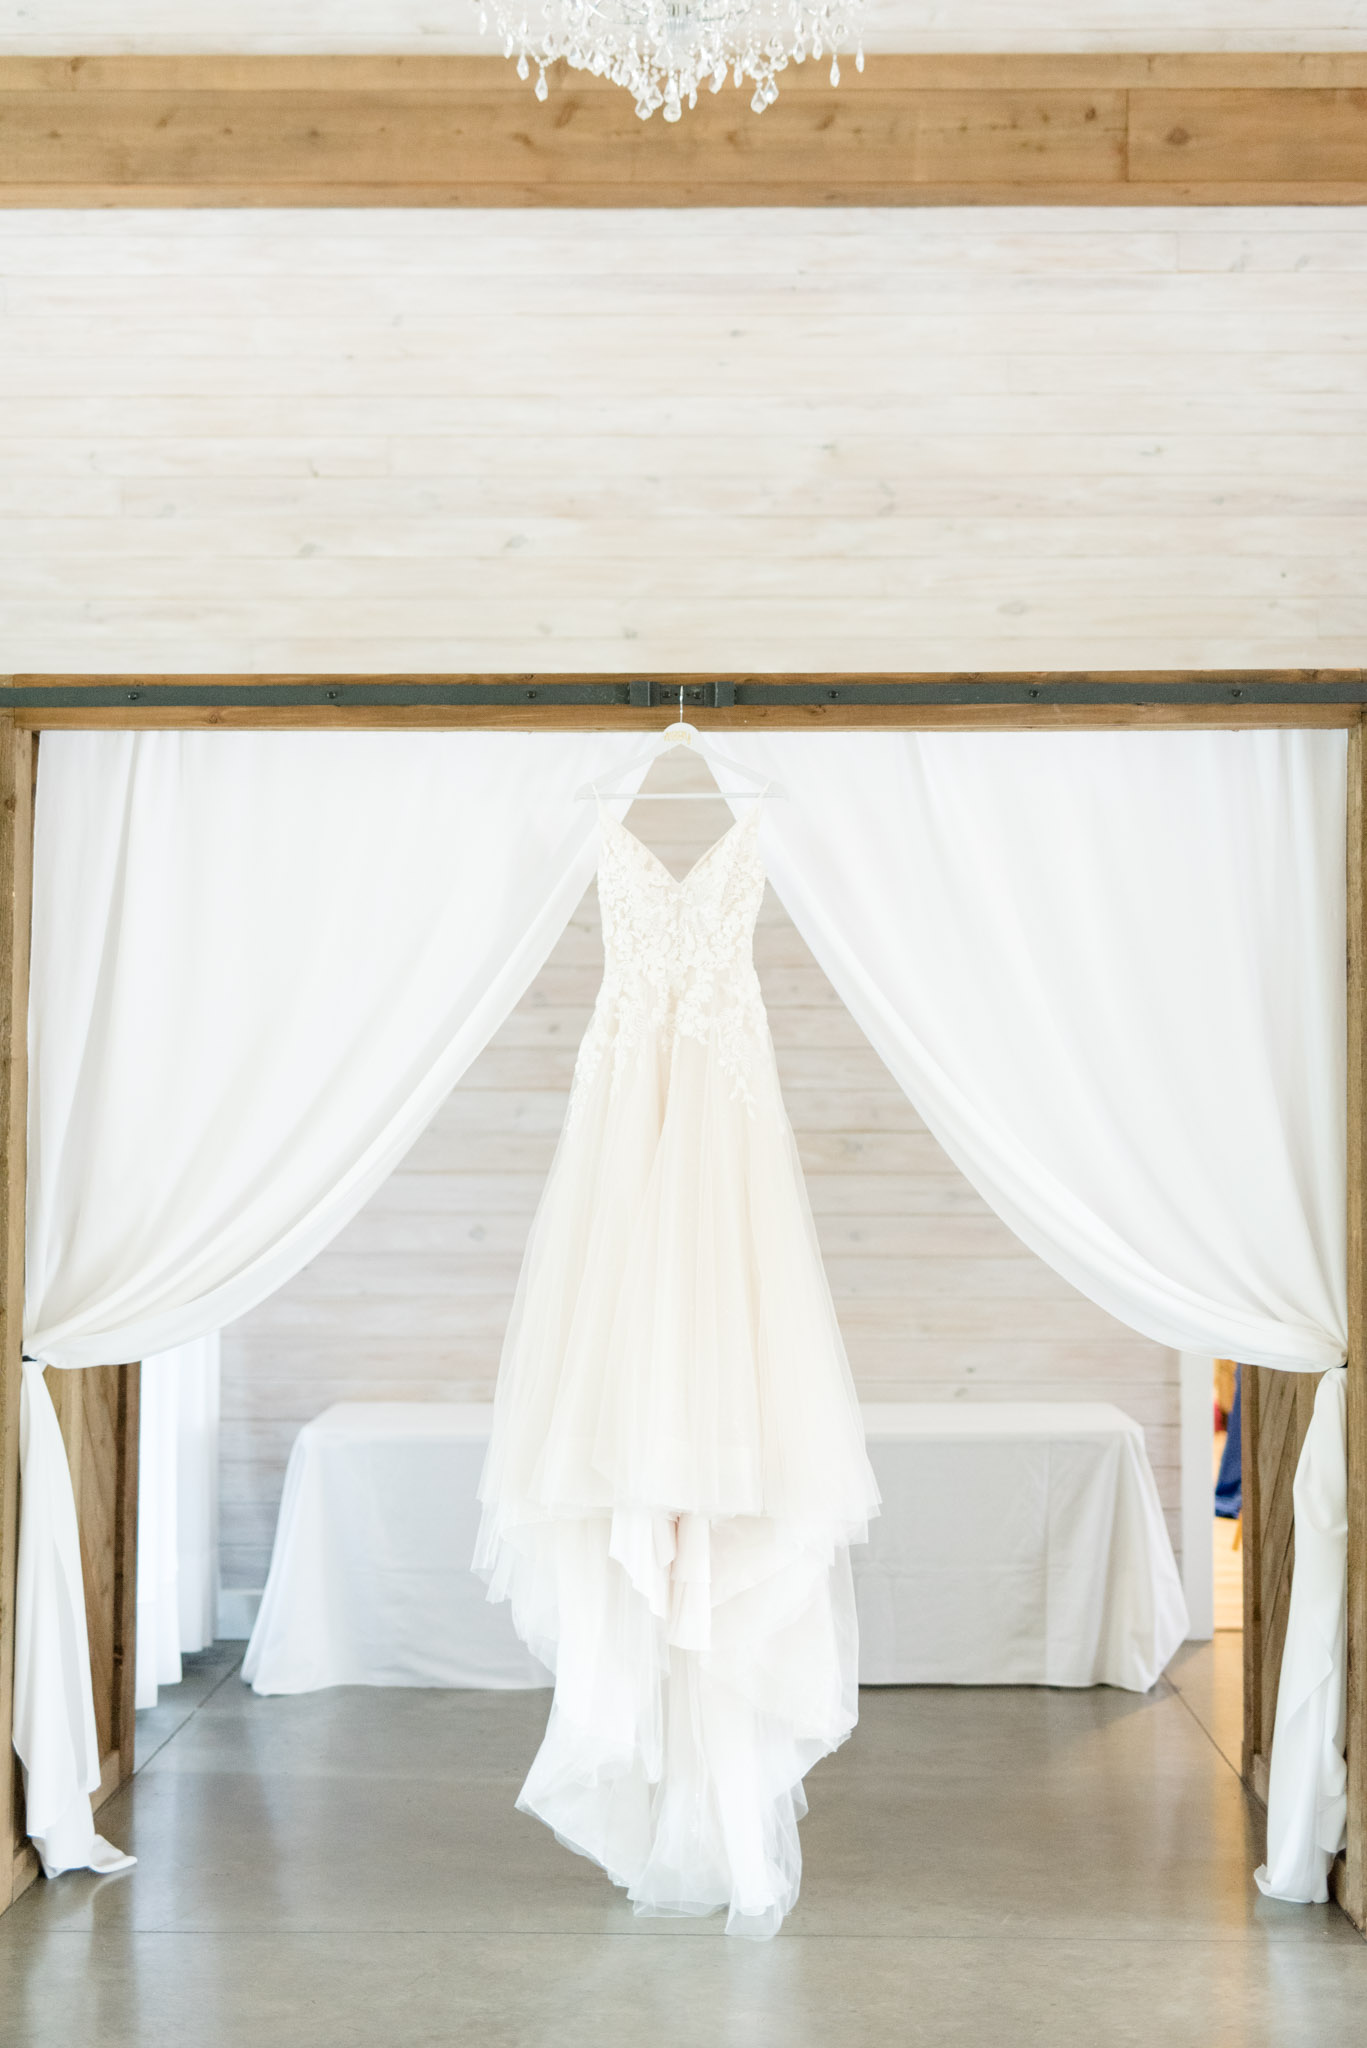 Bridal gown hangs on beam.